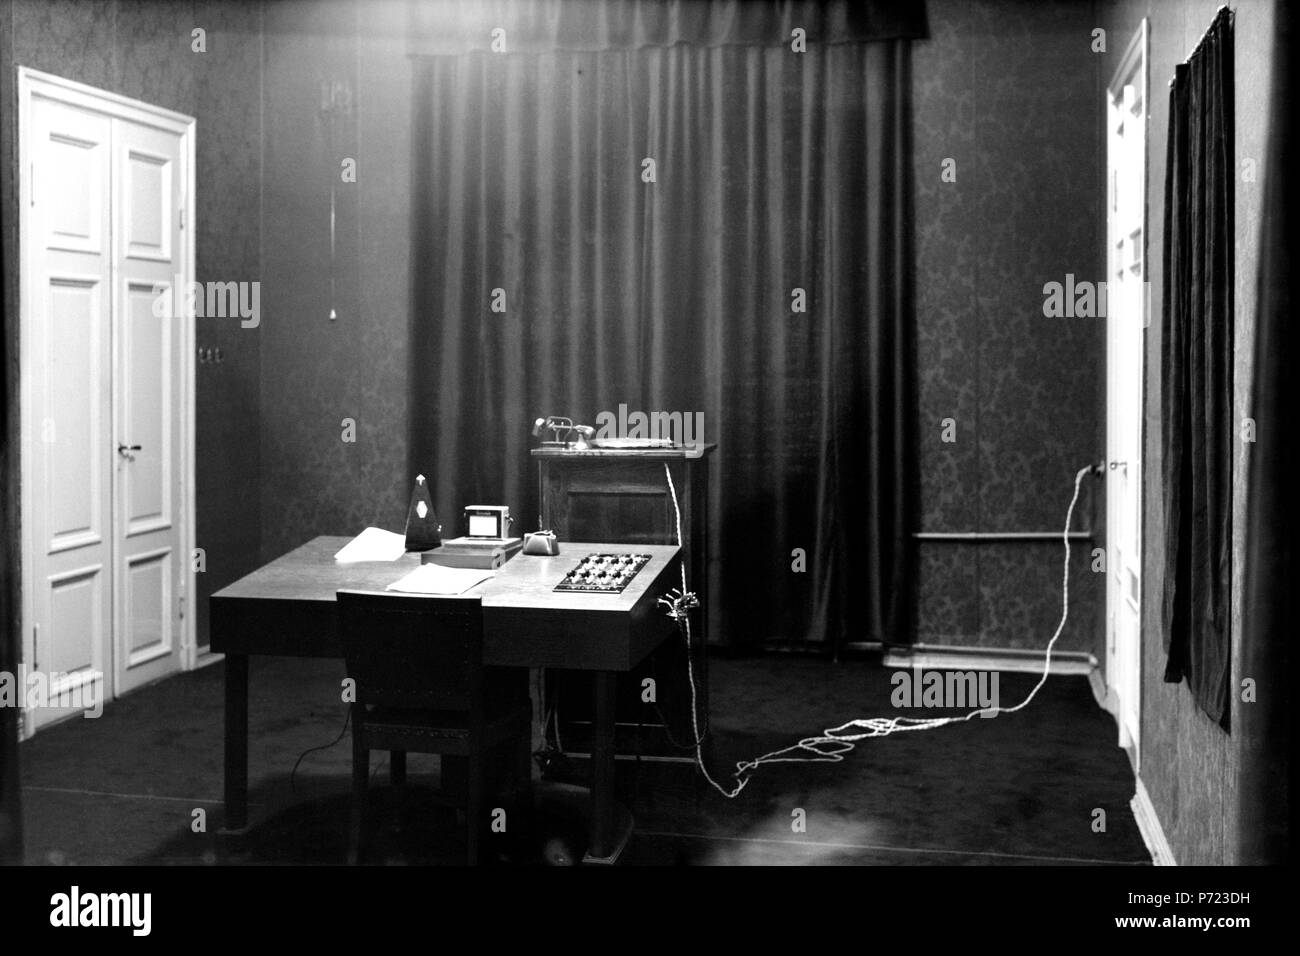 La Société finlandaise de radiodiffusion 1927-1934, annonçant à la radio studio 46 Aleksanterinkatu locaux. Banque D'Images